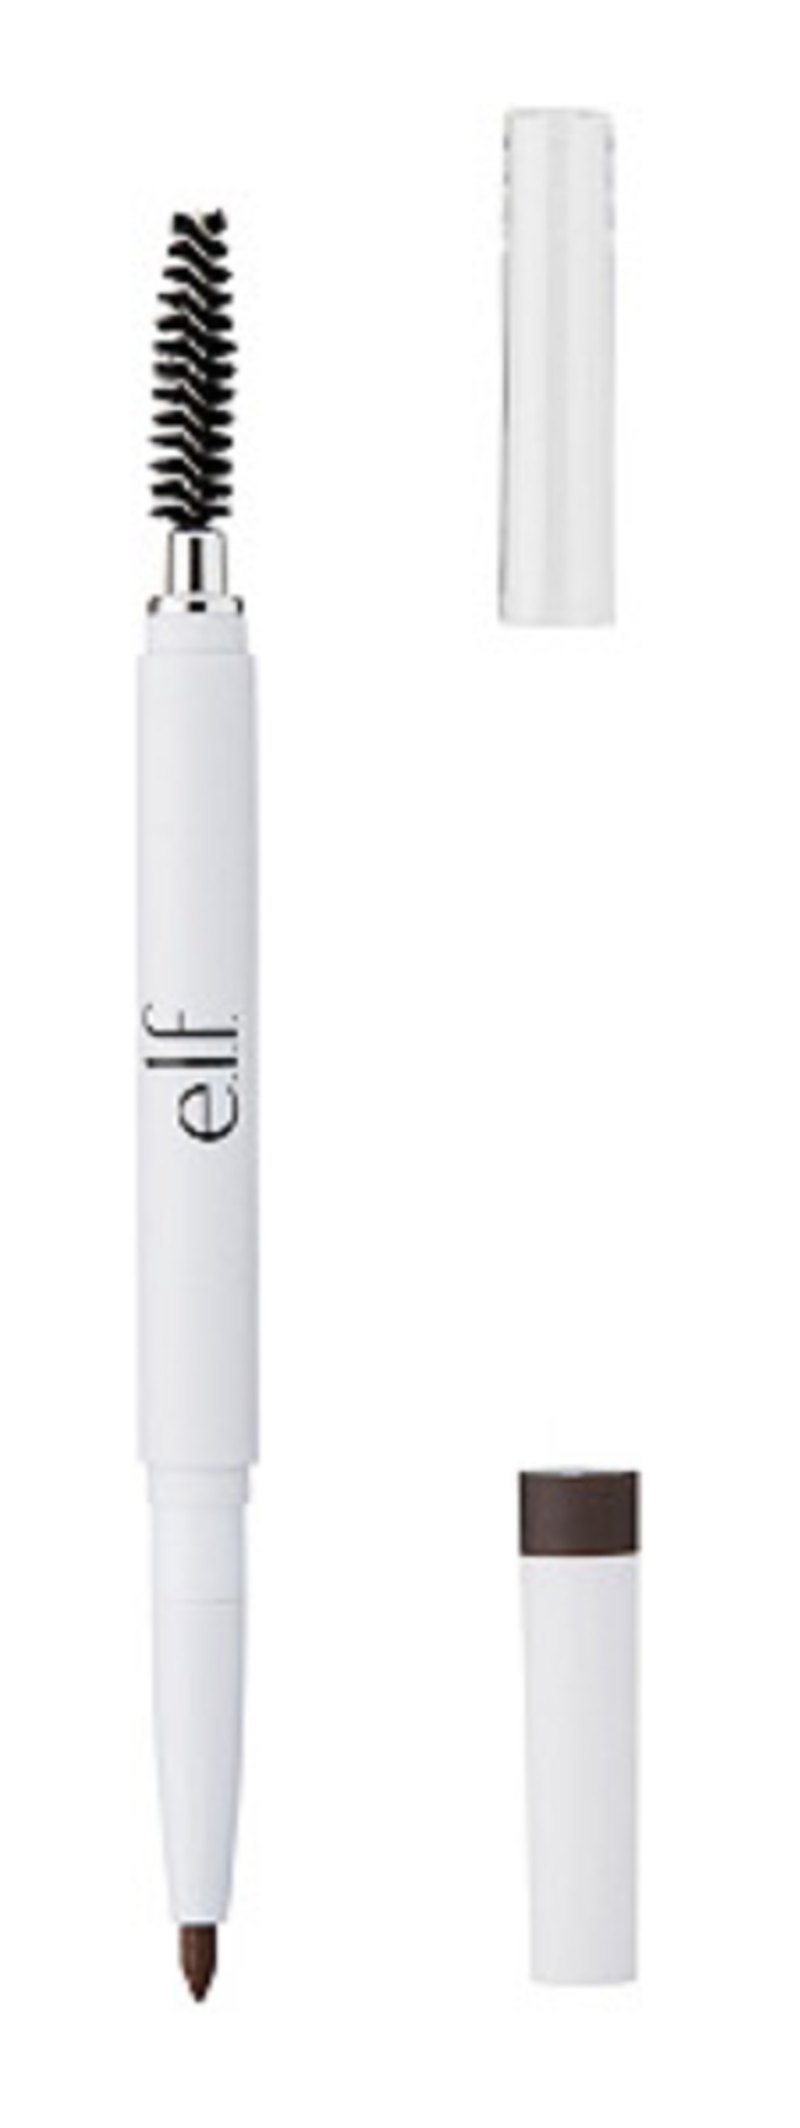 Cheap Brow Pencil: E.l.f. Cosmetics Instant Lift Brow Pencil